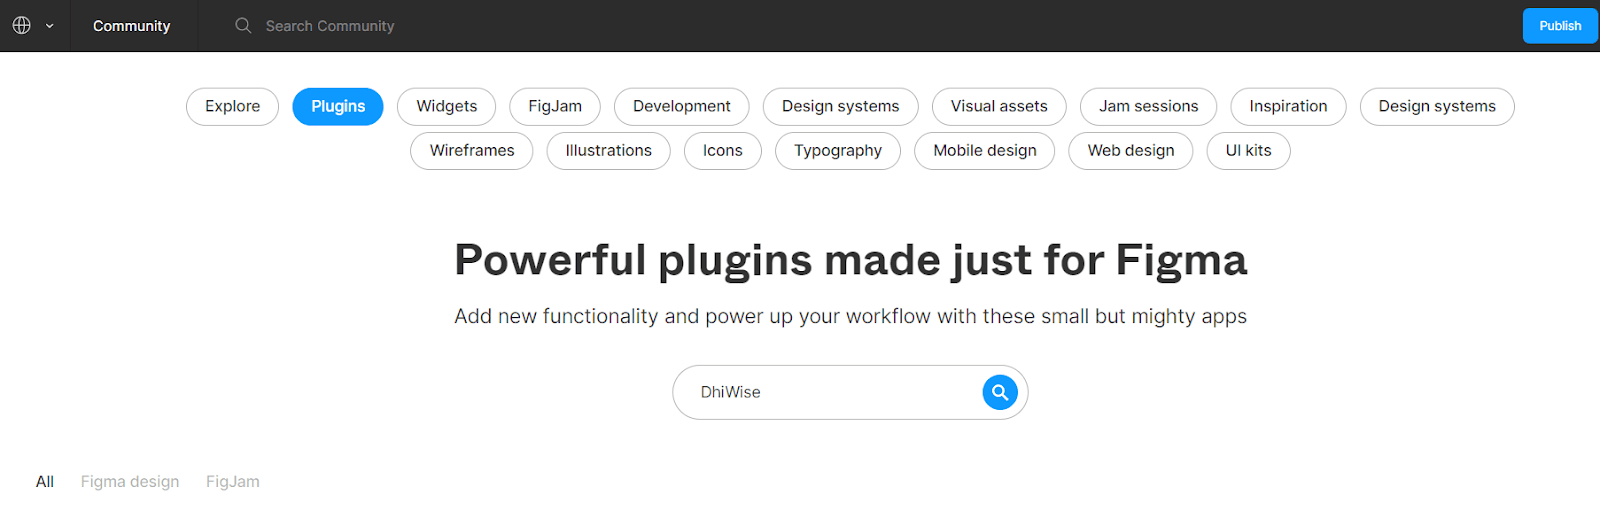 powerful-plugins